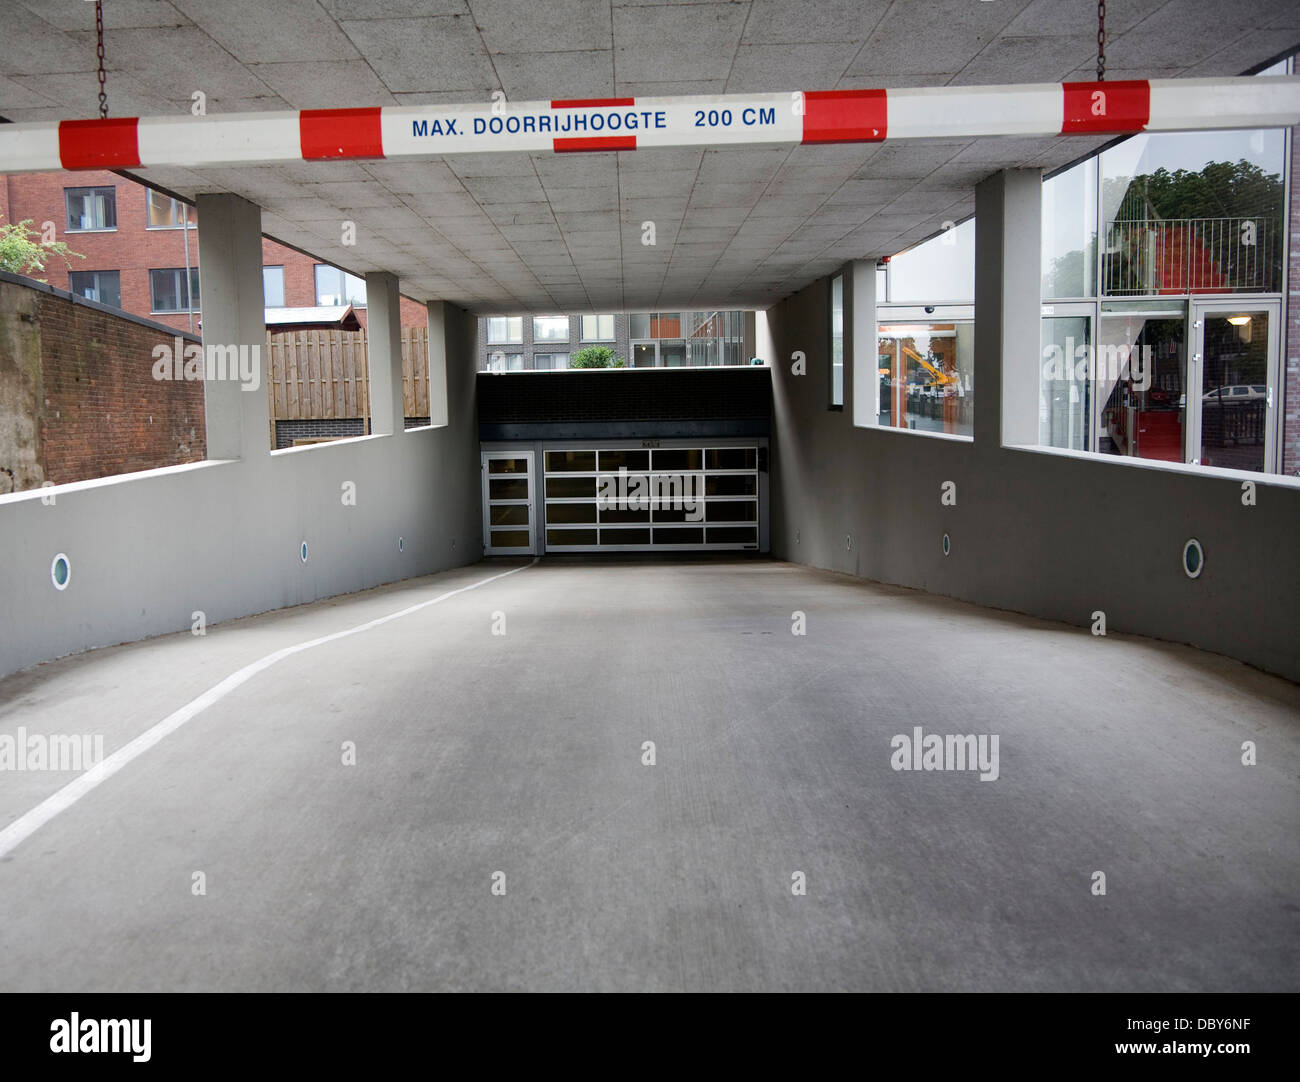 Ingresso del parco auto barriera altezza cancello di sicurezza Dordrecht, Paesi Bassi Foto Stock